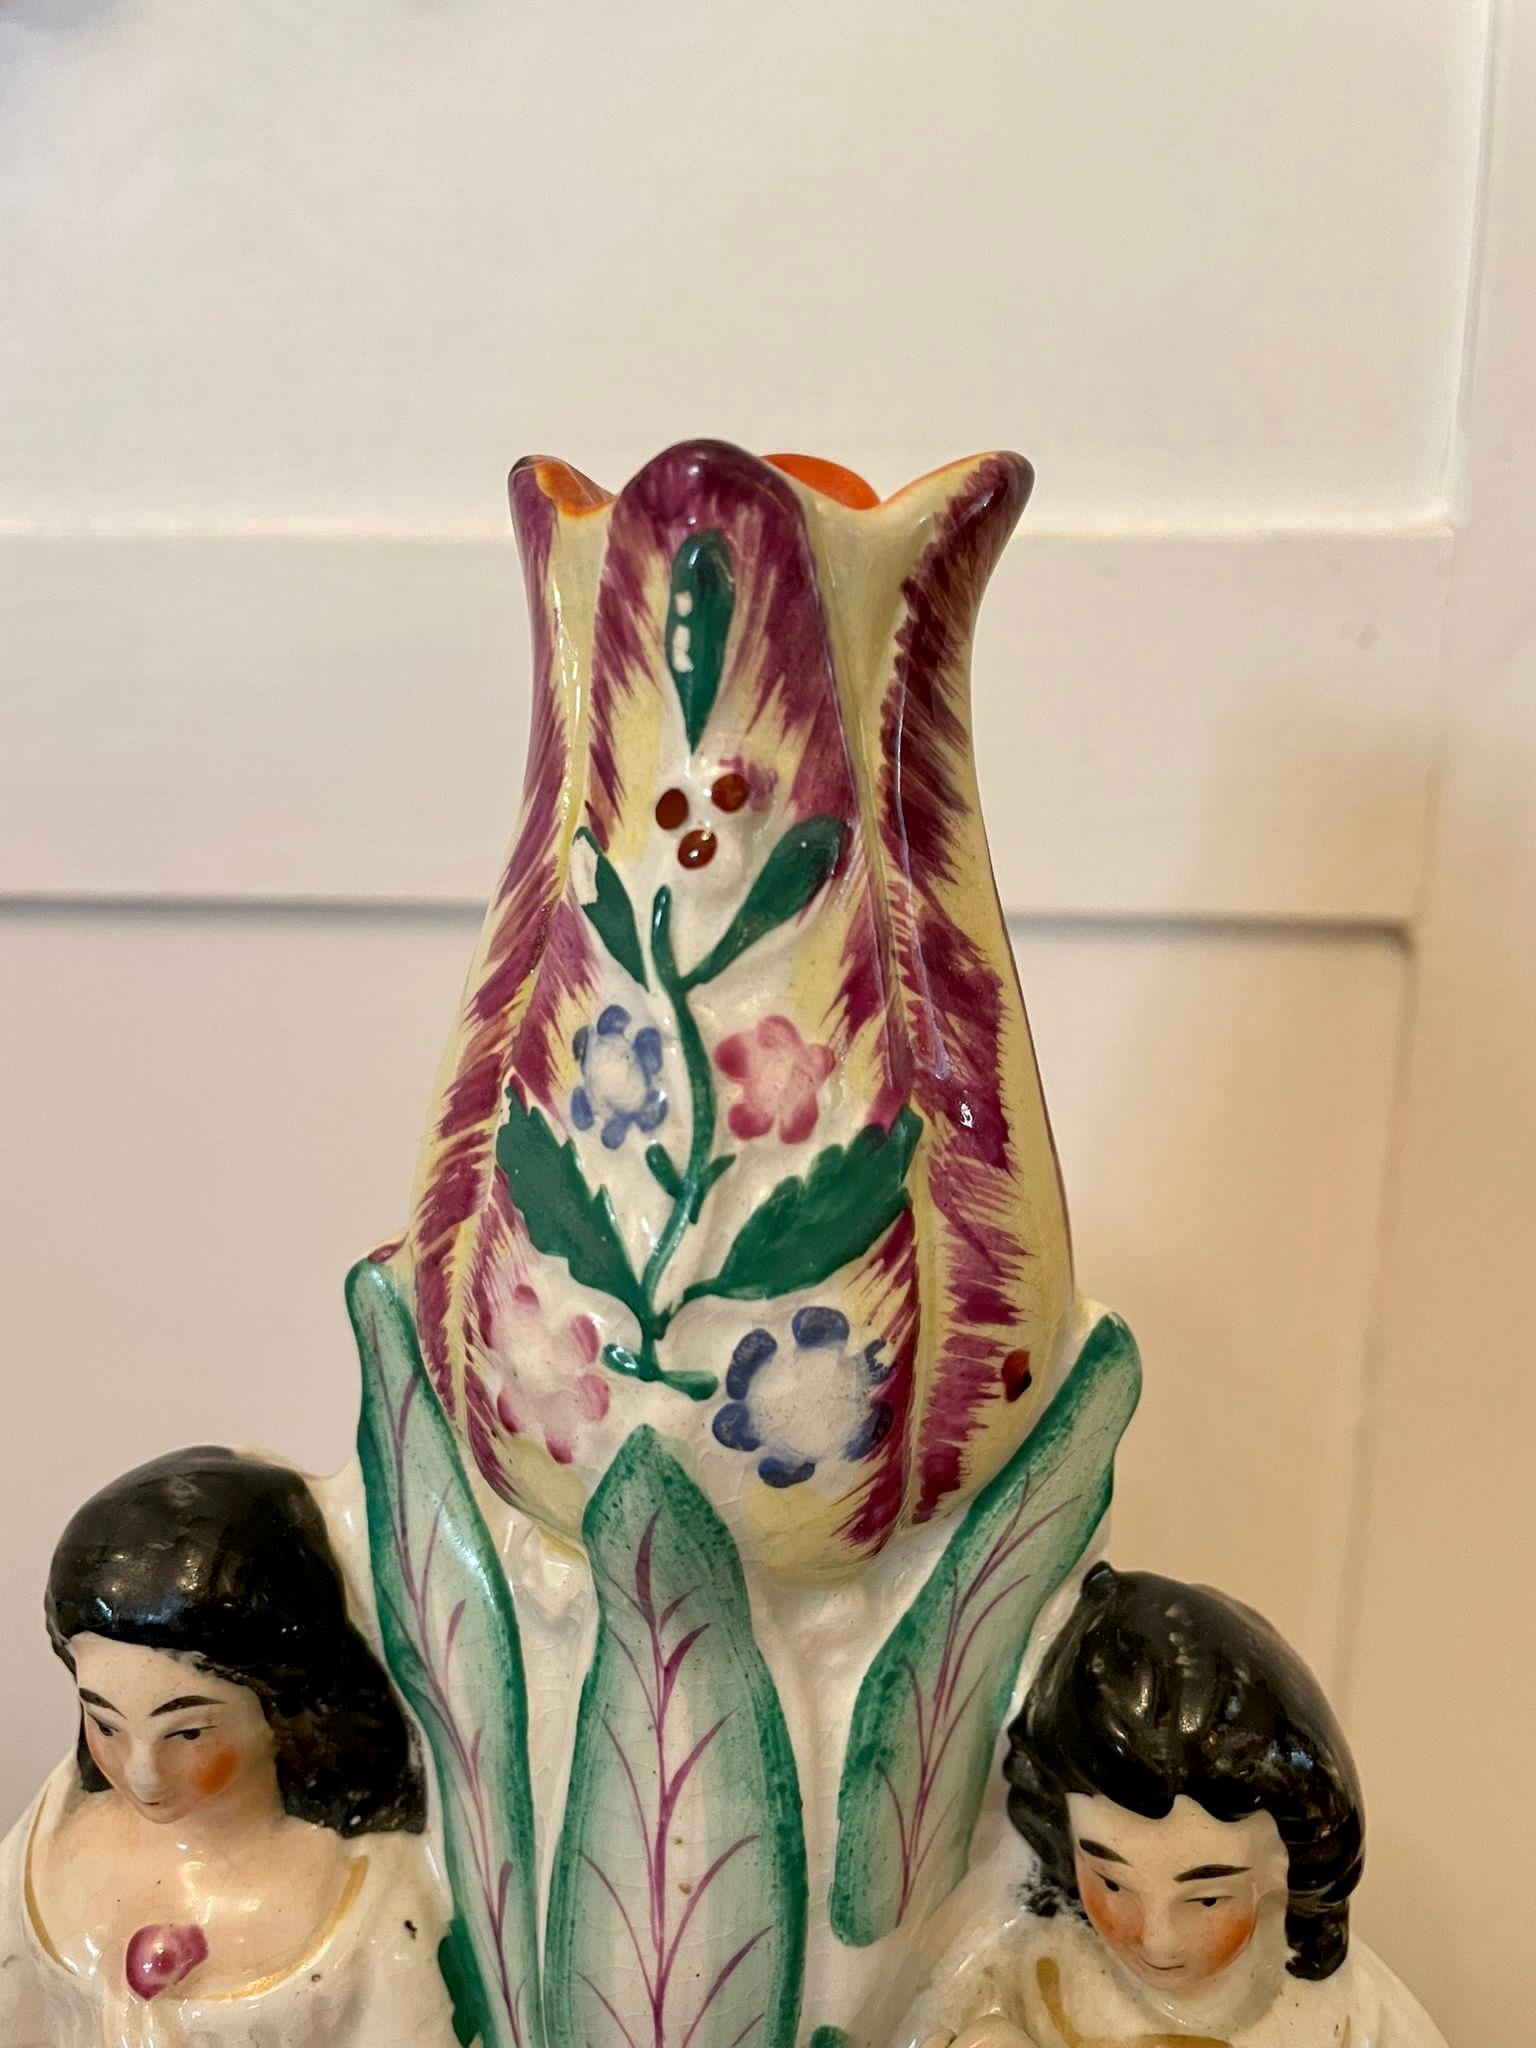 Ceramic Antique Victorian Staffordshire Figures